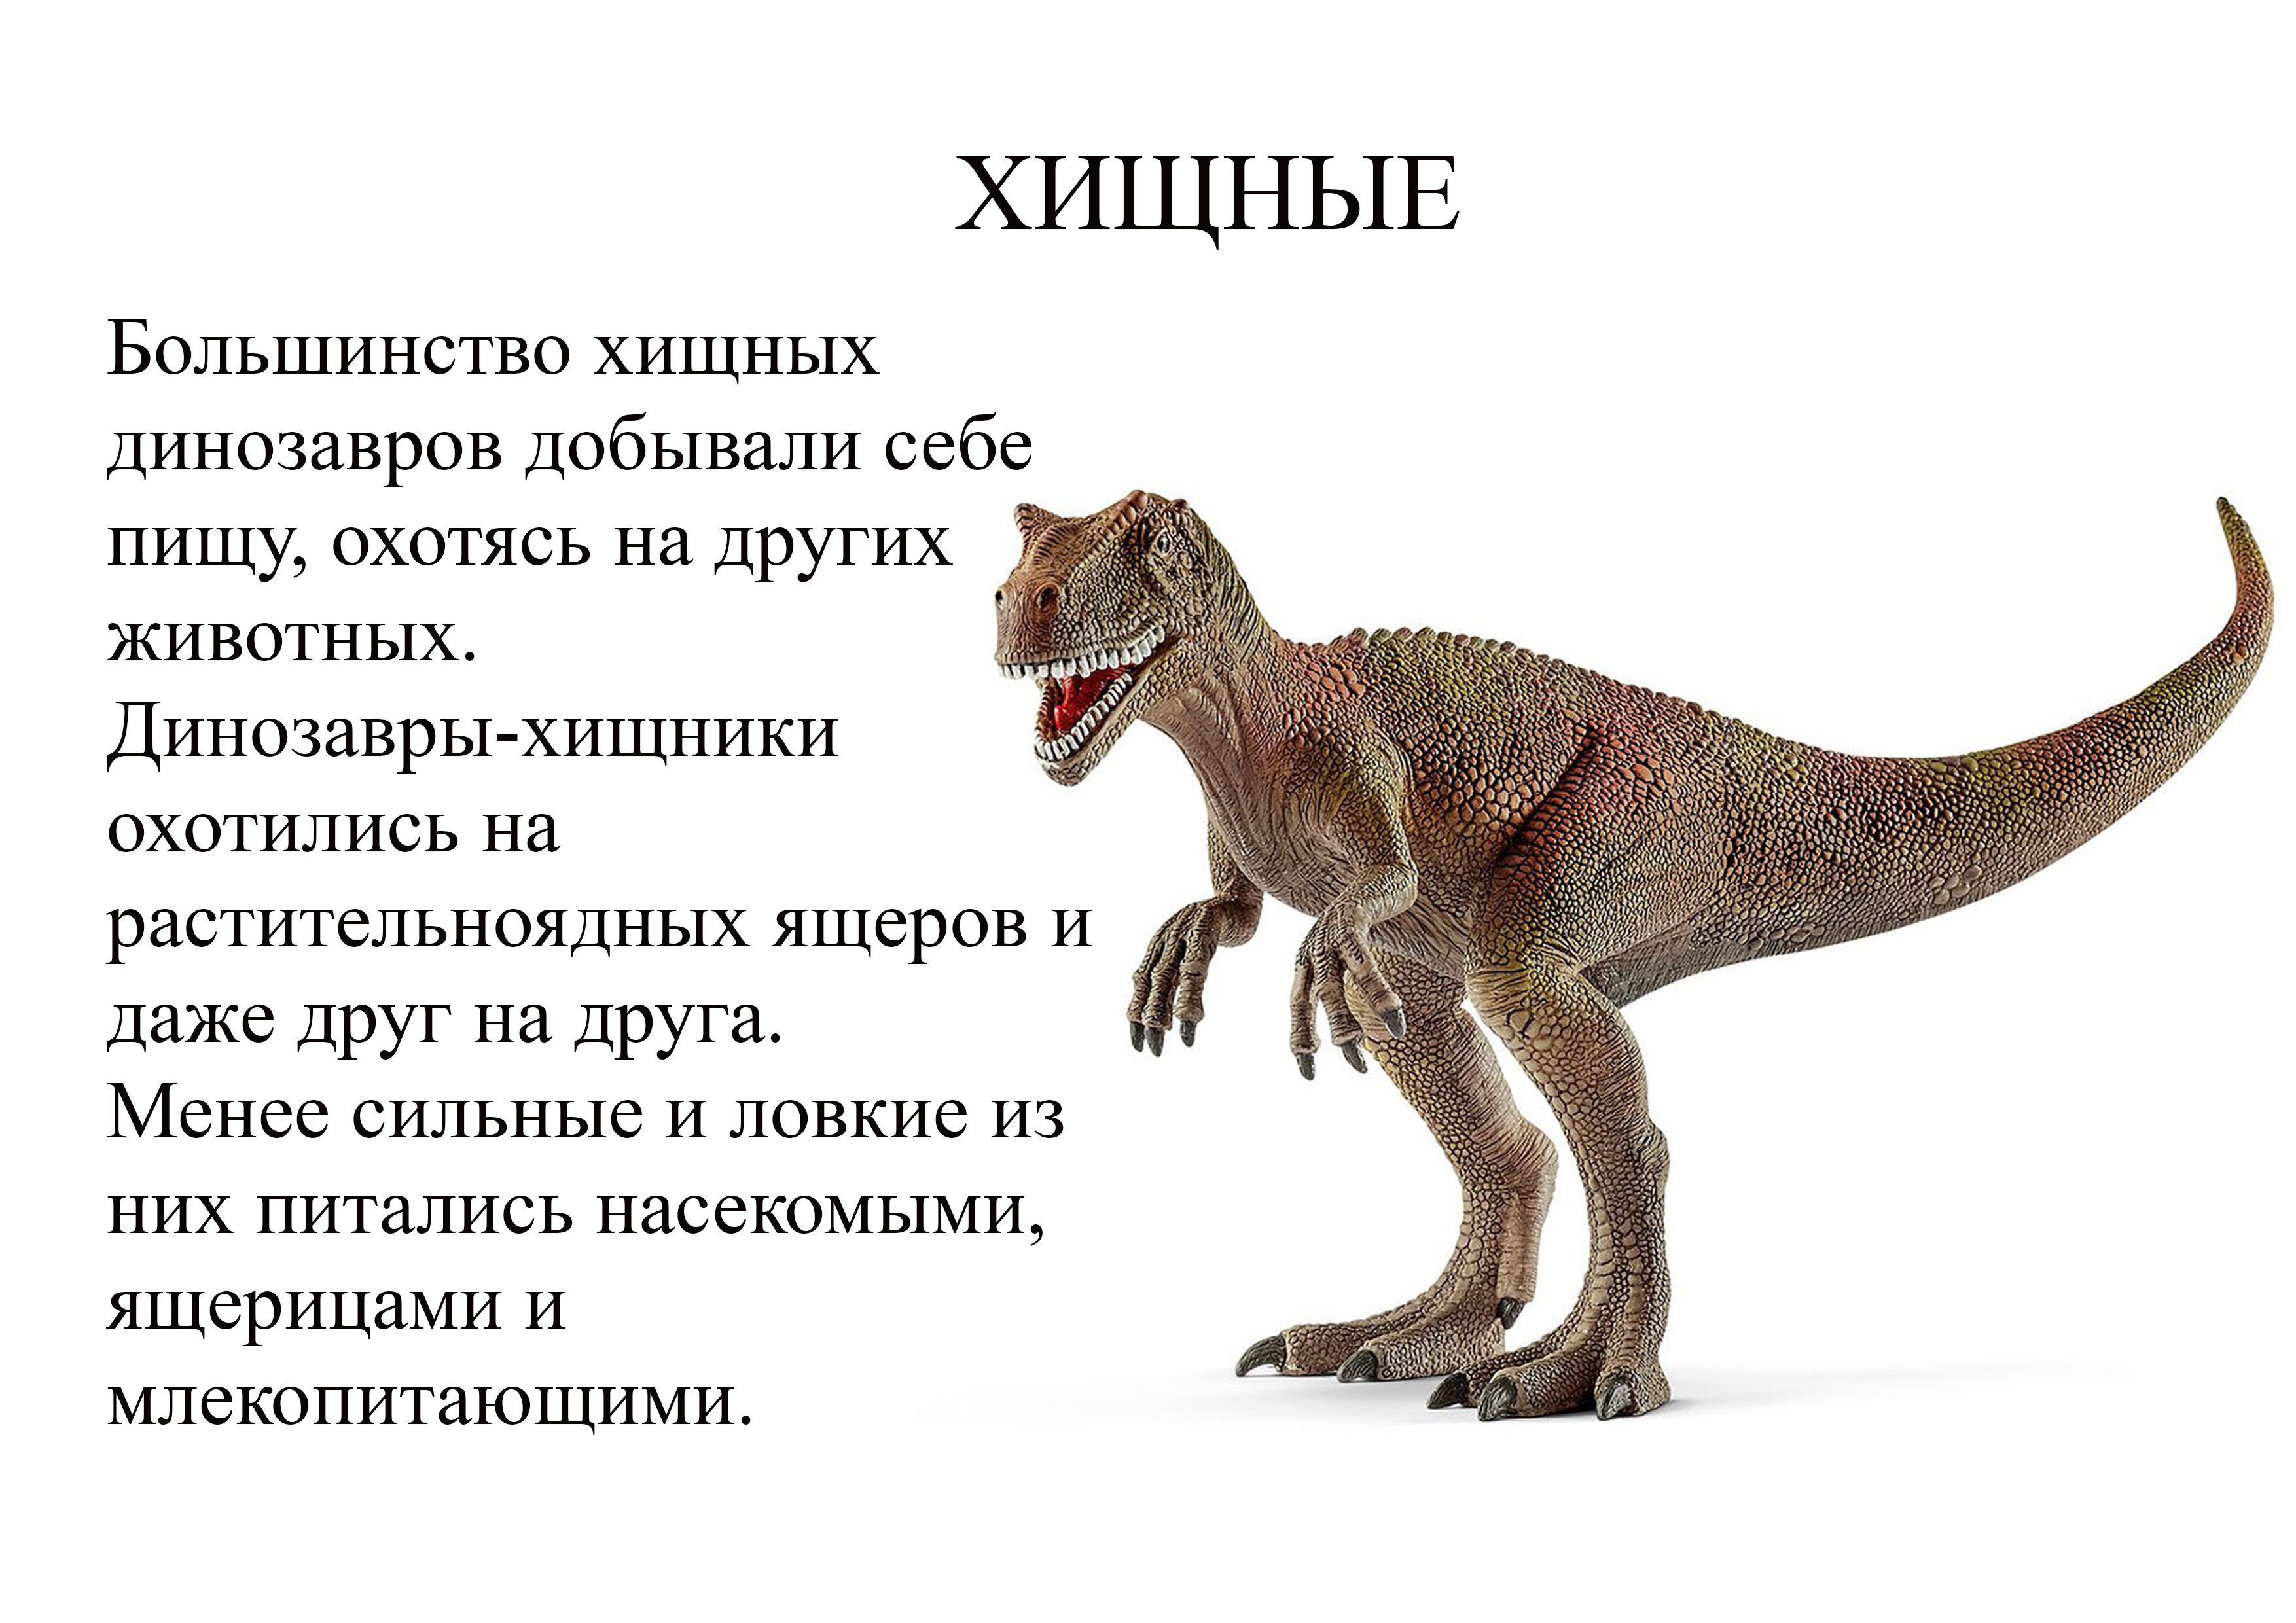 Фото динозавров с названиями на русском языке фото